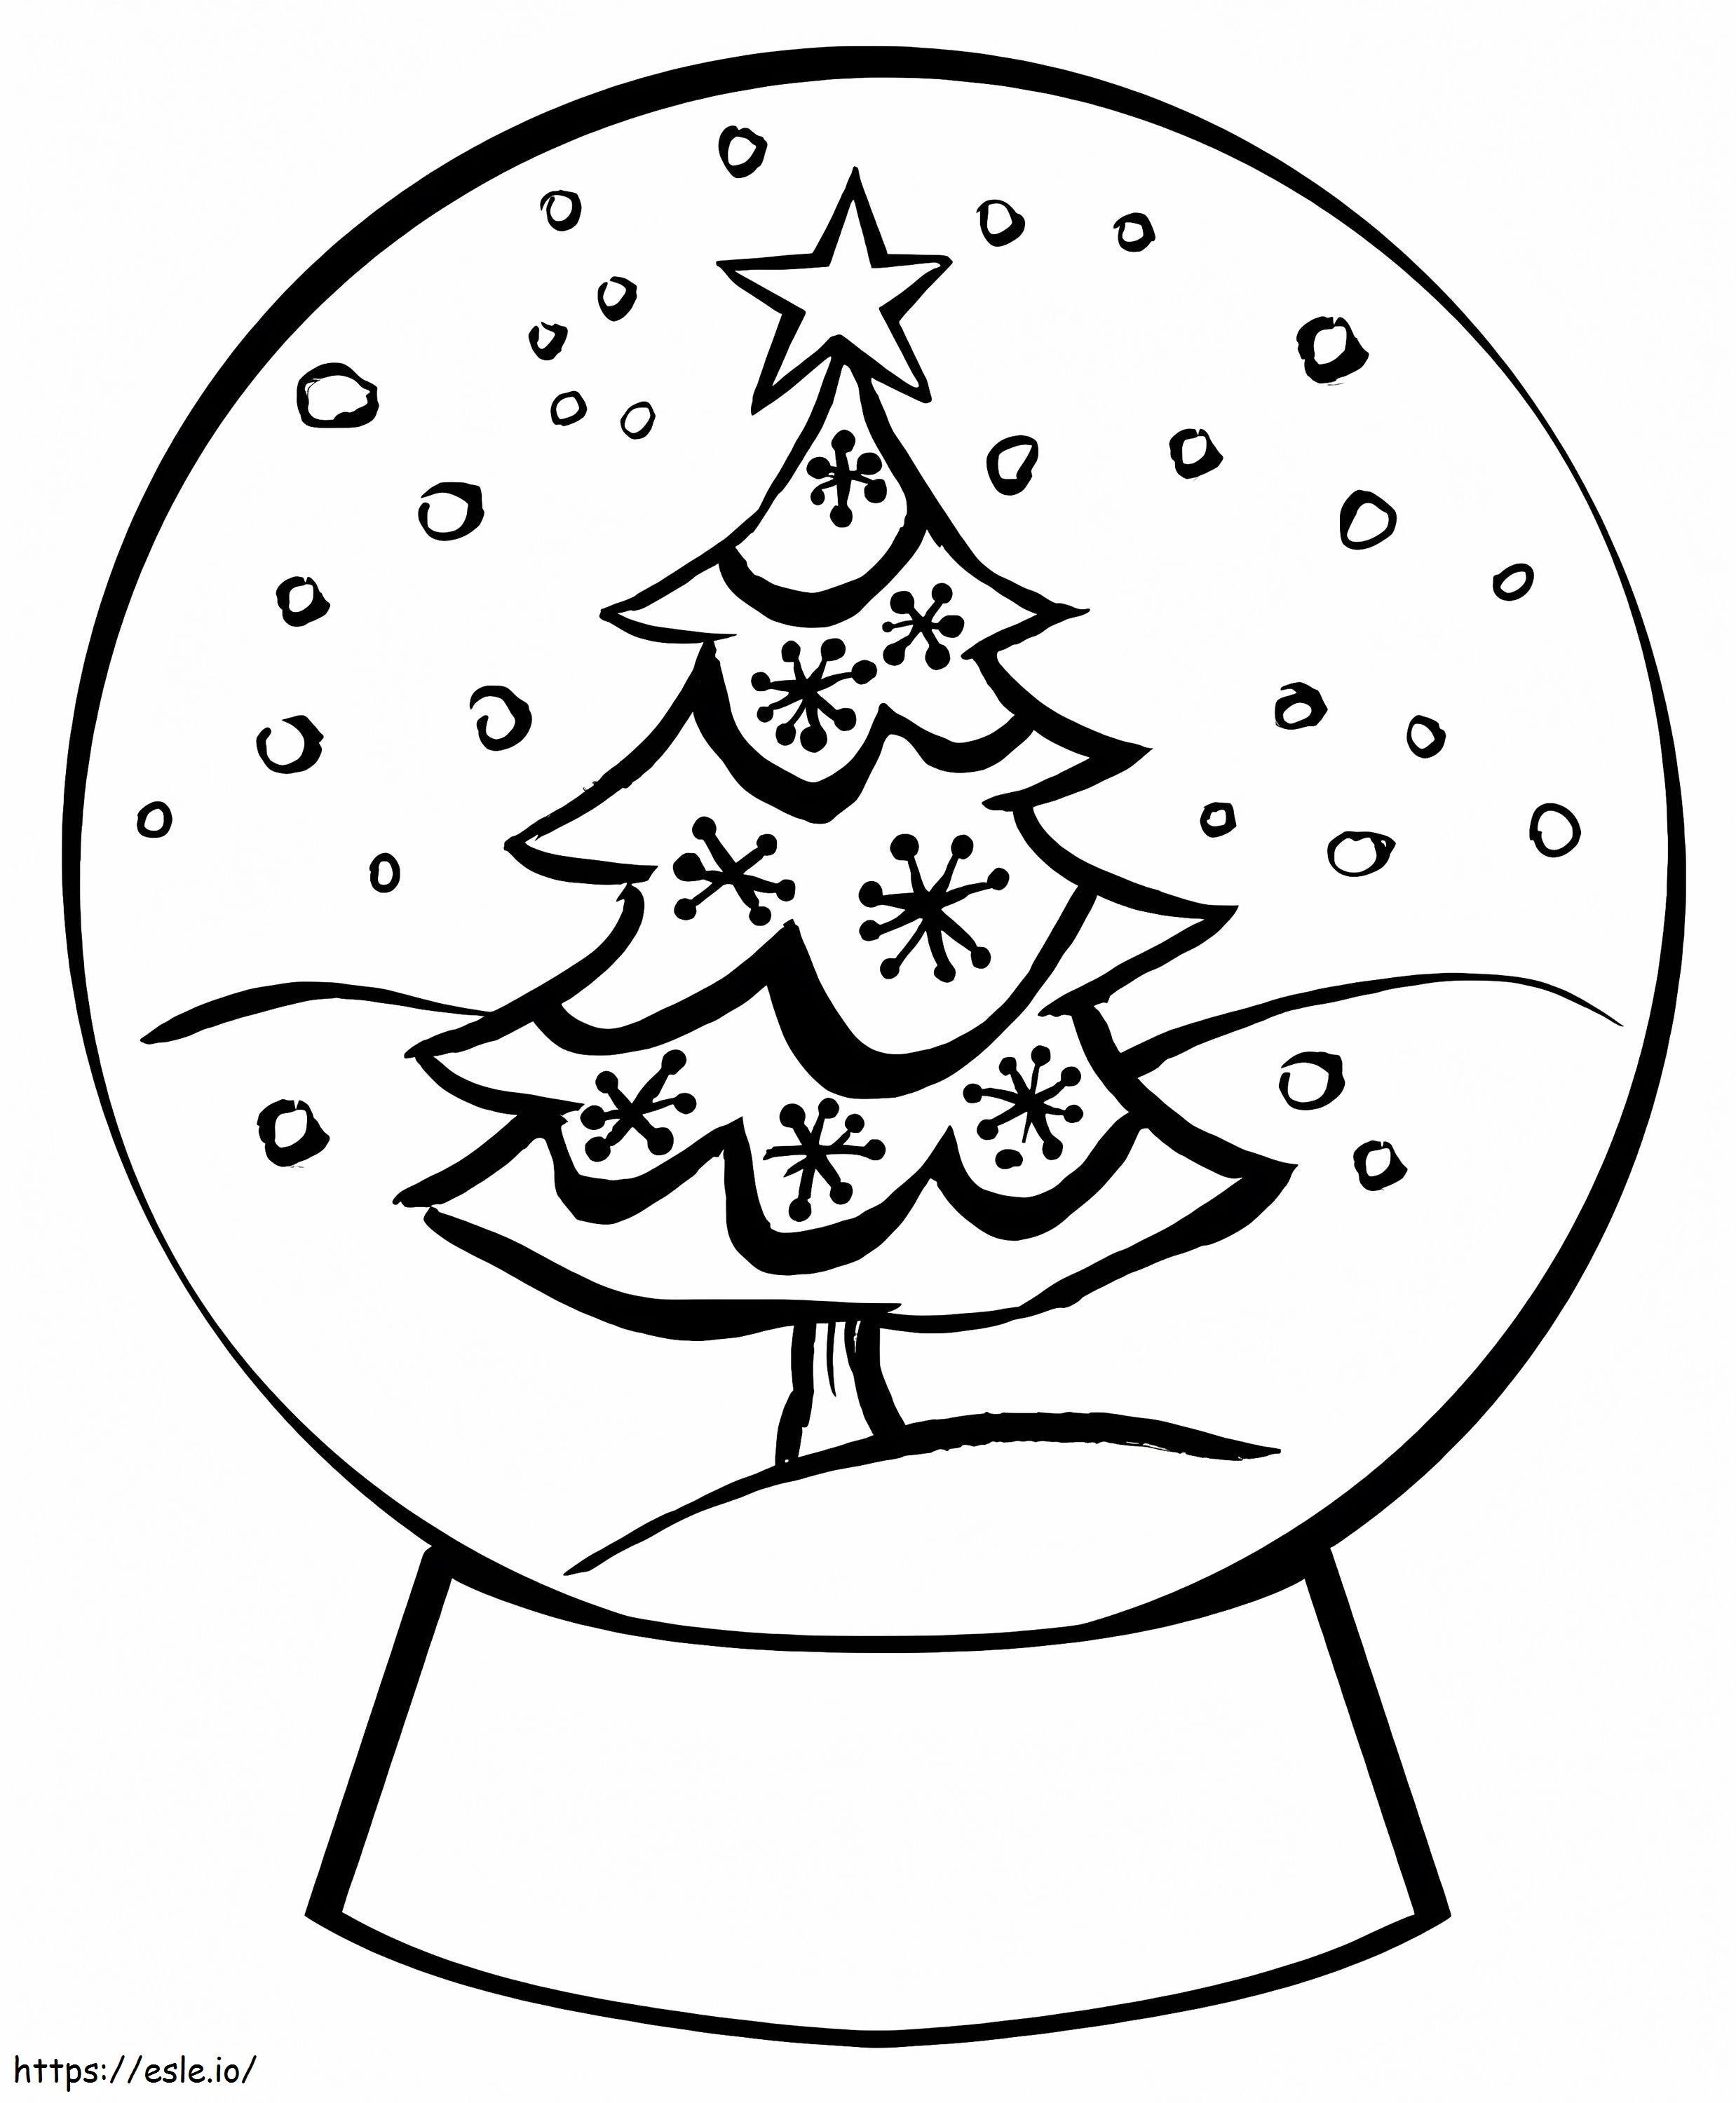 Globo di neve con albero di Natale gratis da colorare